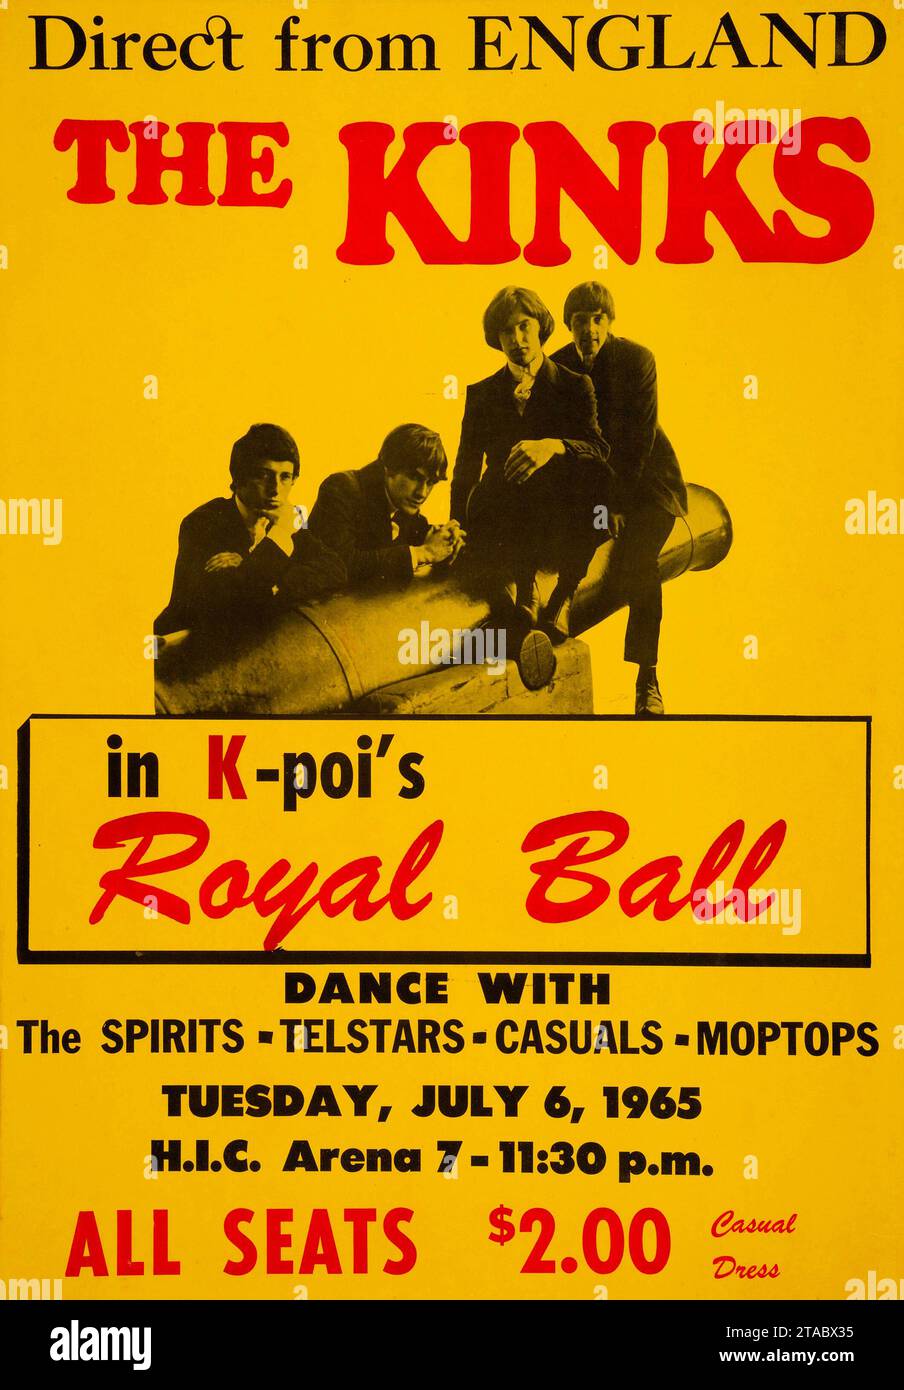 Direct from England - THE KINKS - 6 luglio 1965 concerto all'Honolulu International Center (HIC) Arena delle Hawaii, parte del tour di debutto della band negli Stati Uniti Foto Stock